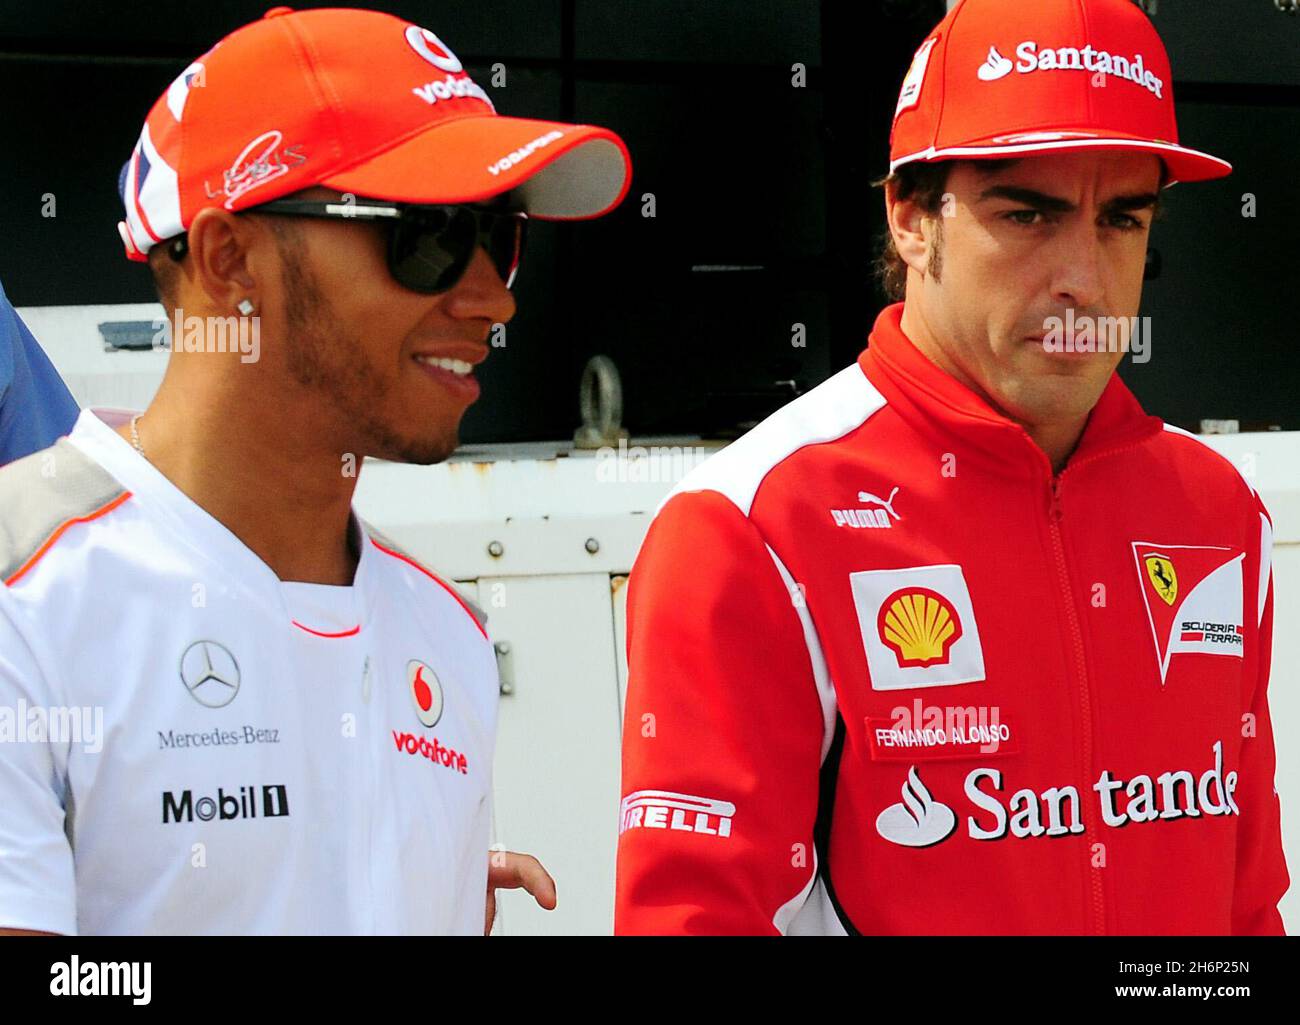 Foto del archivo fechada 05-07-2012 de Lewis Hamilton (izquierda) y Fernando Alonso, que dice que su relación es más fría que antes - reclamando el estilo de vida siete veces campeón del mundo lo separa del resto de la cuadrícula de Fórmula Uno. Fecha de emisión: Miércoles 17 de noviembre de 2021. Foto de stock